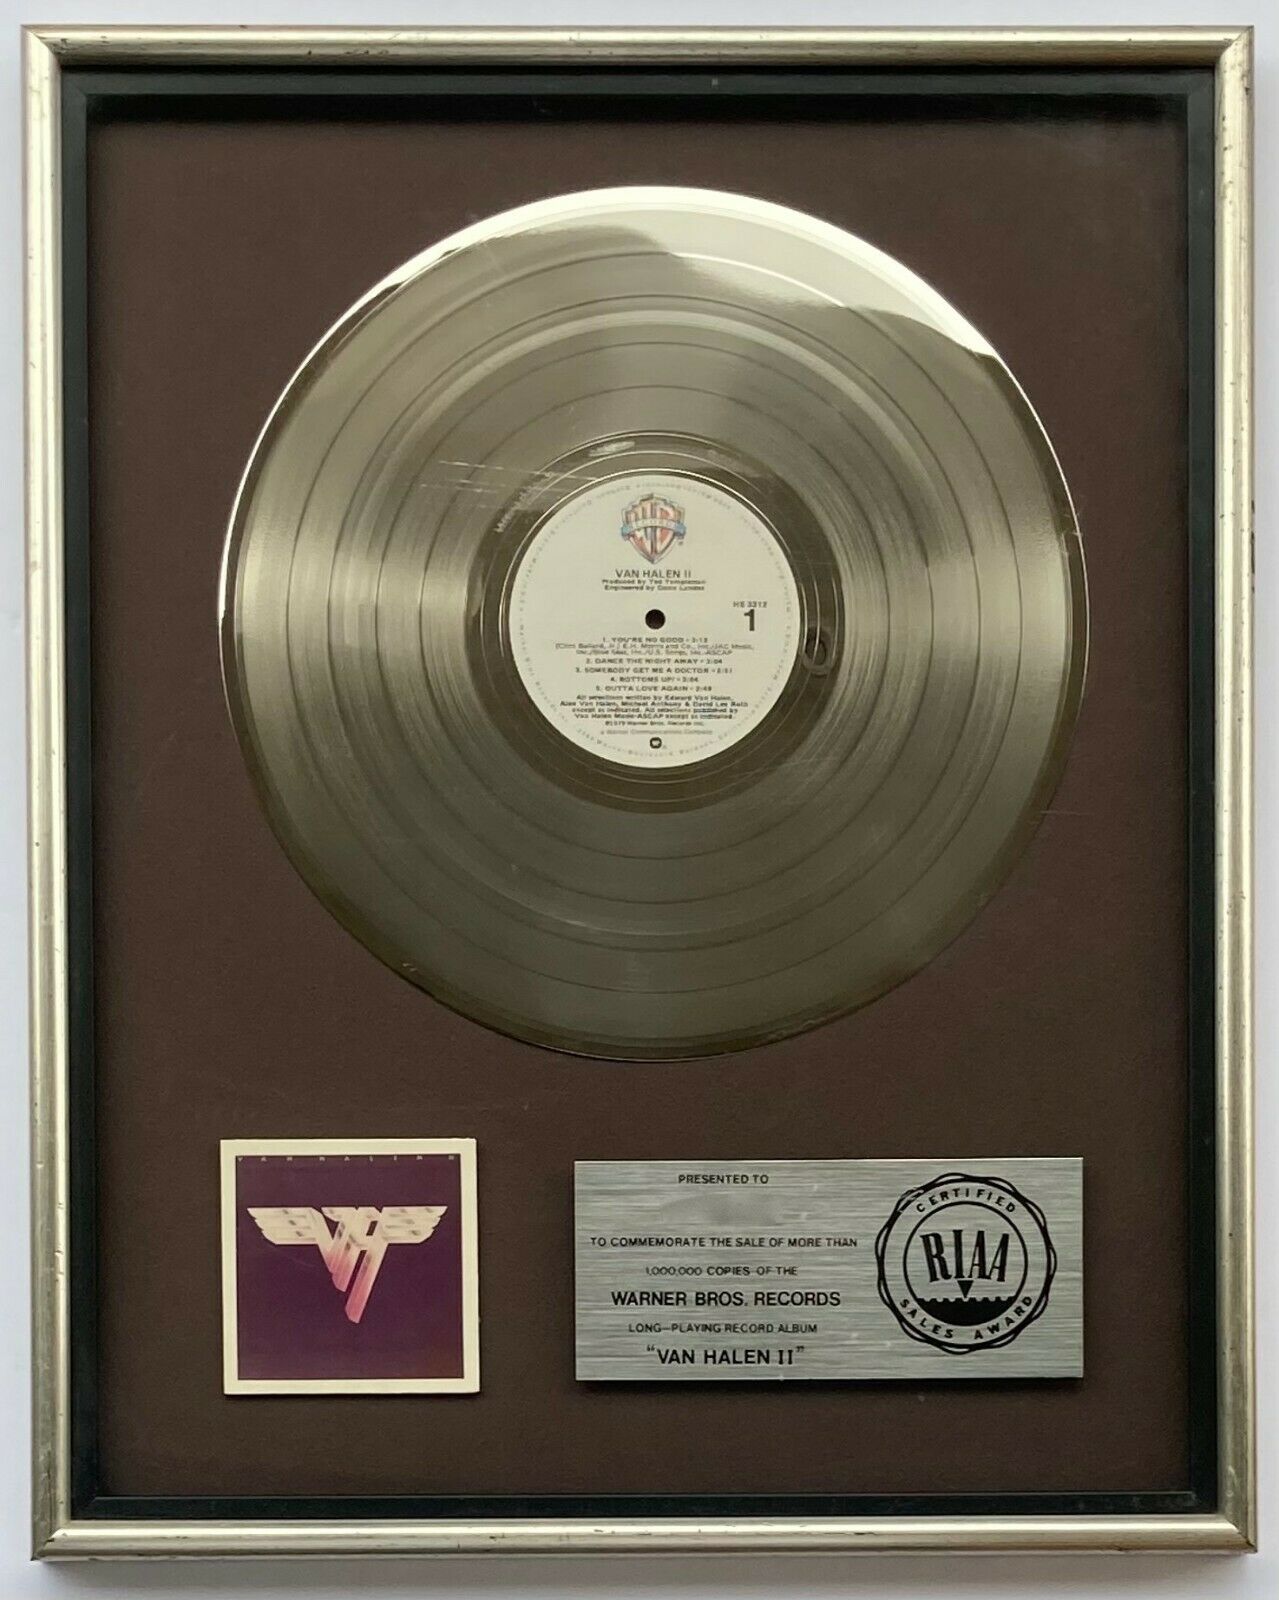 Van Halen Van Halen Ii Riaa Platinum Record Award Presented To Warner Bros Svp